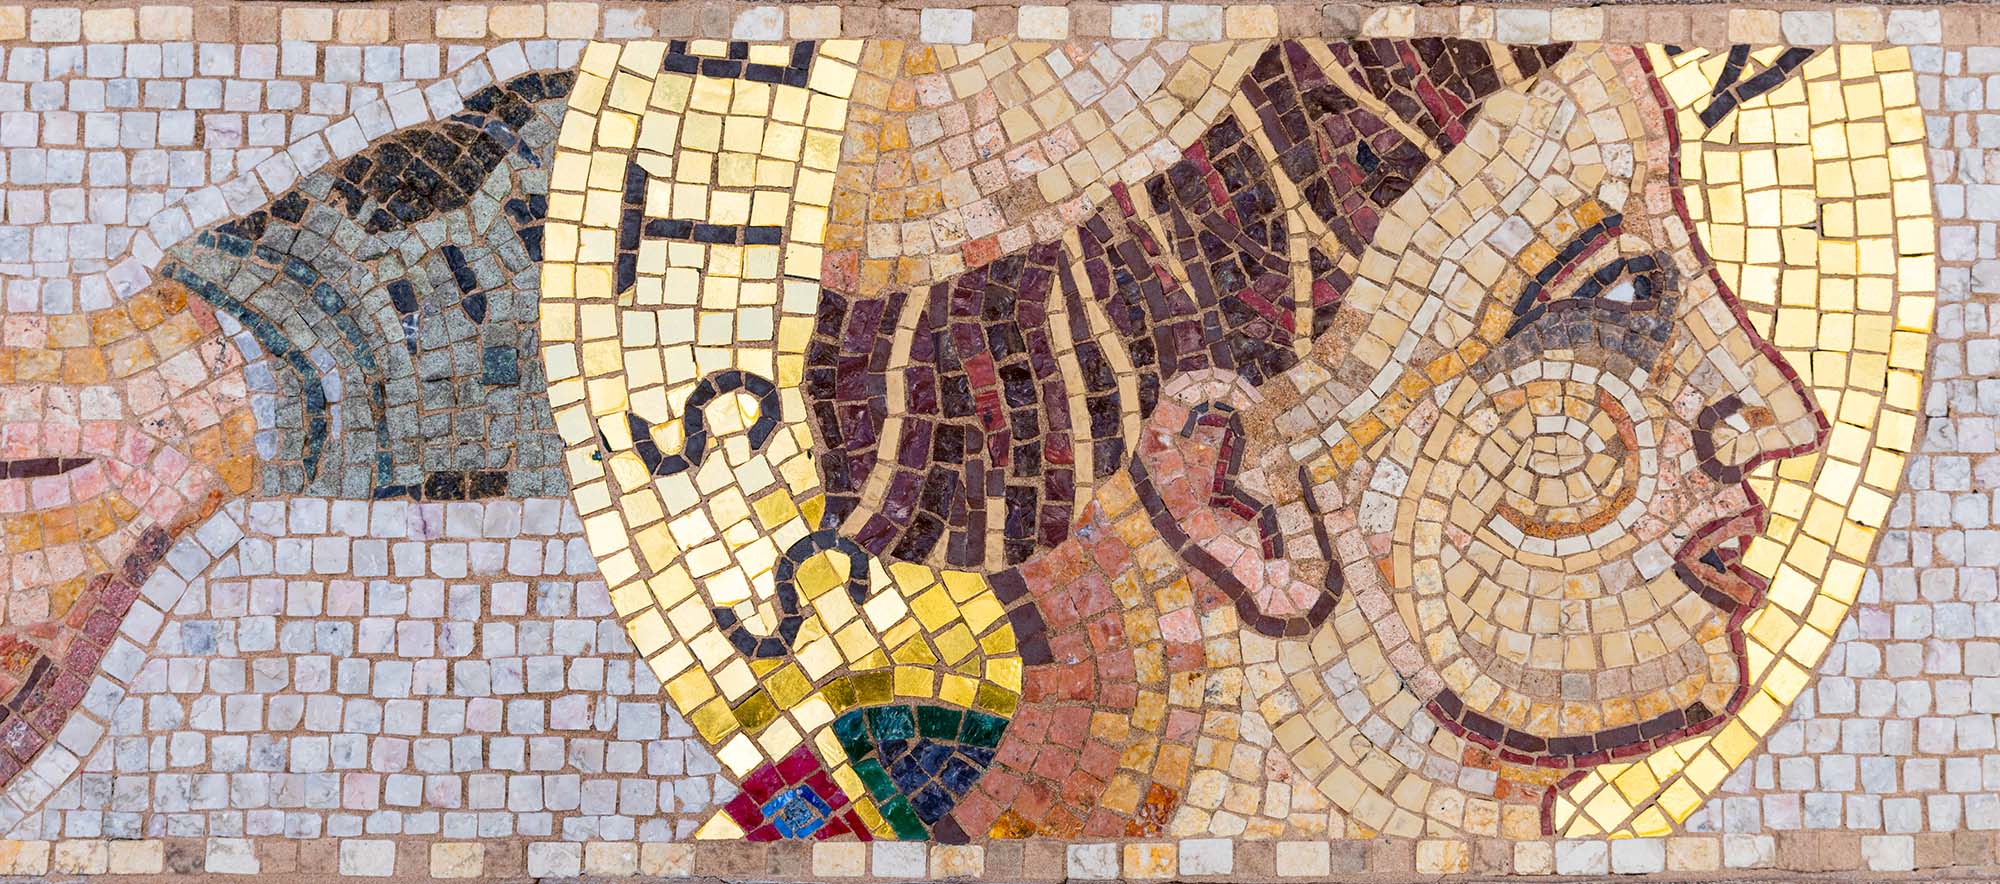 A custom religious mosaic